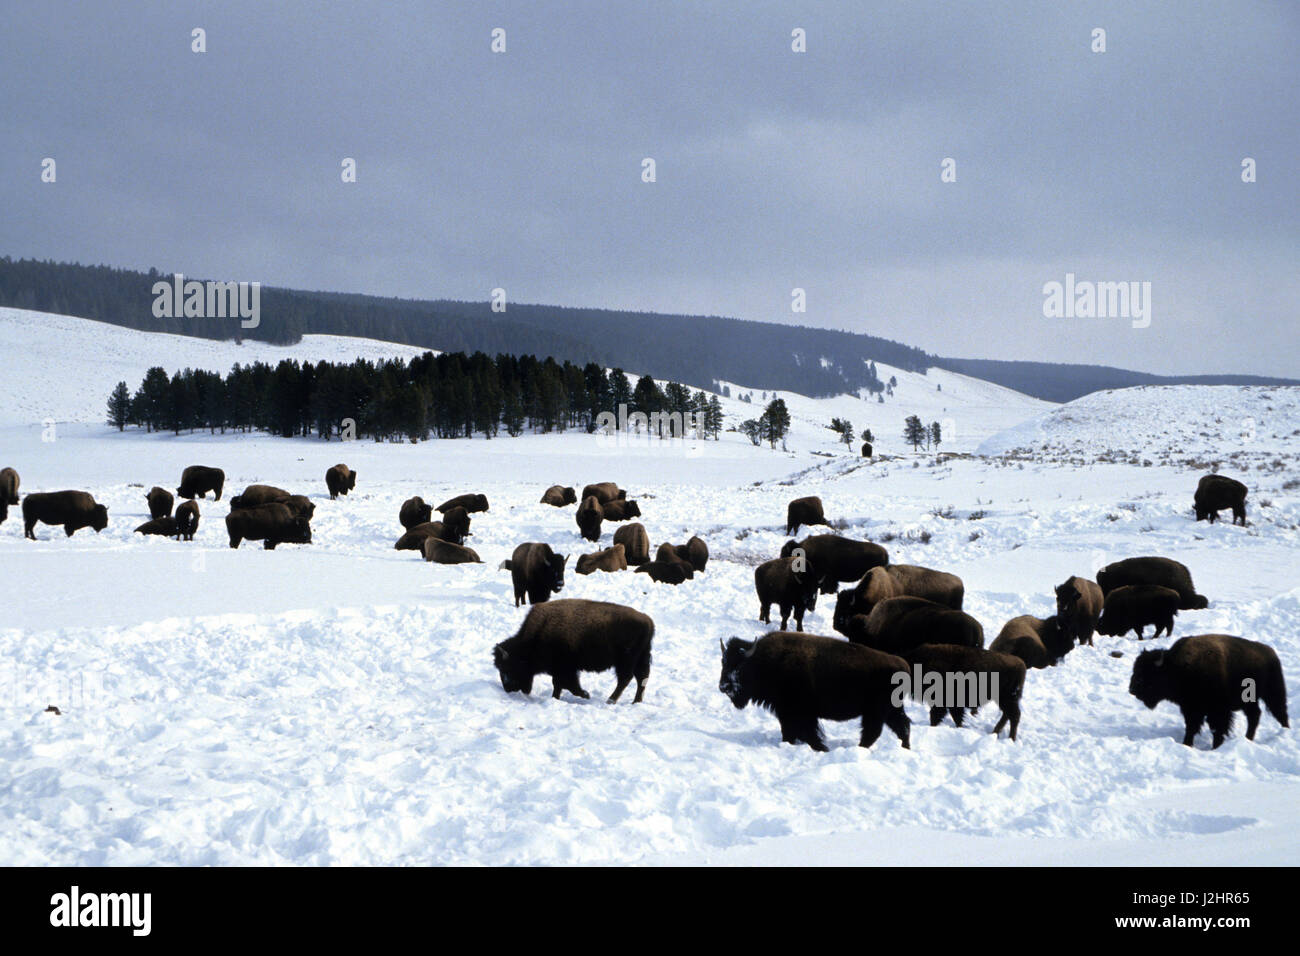 El bisonte (Bison bison) rebaño en invierno, el Parque Nacional Yellowstone, Wyoming Foto de stock